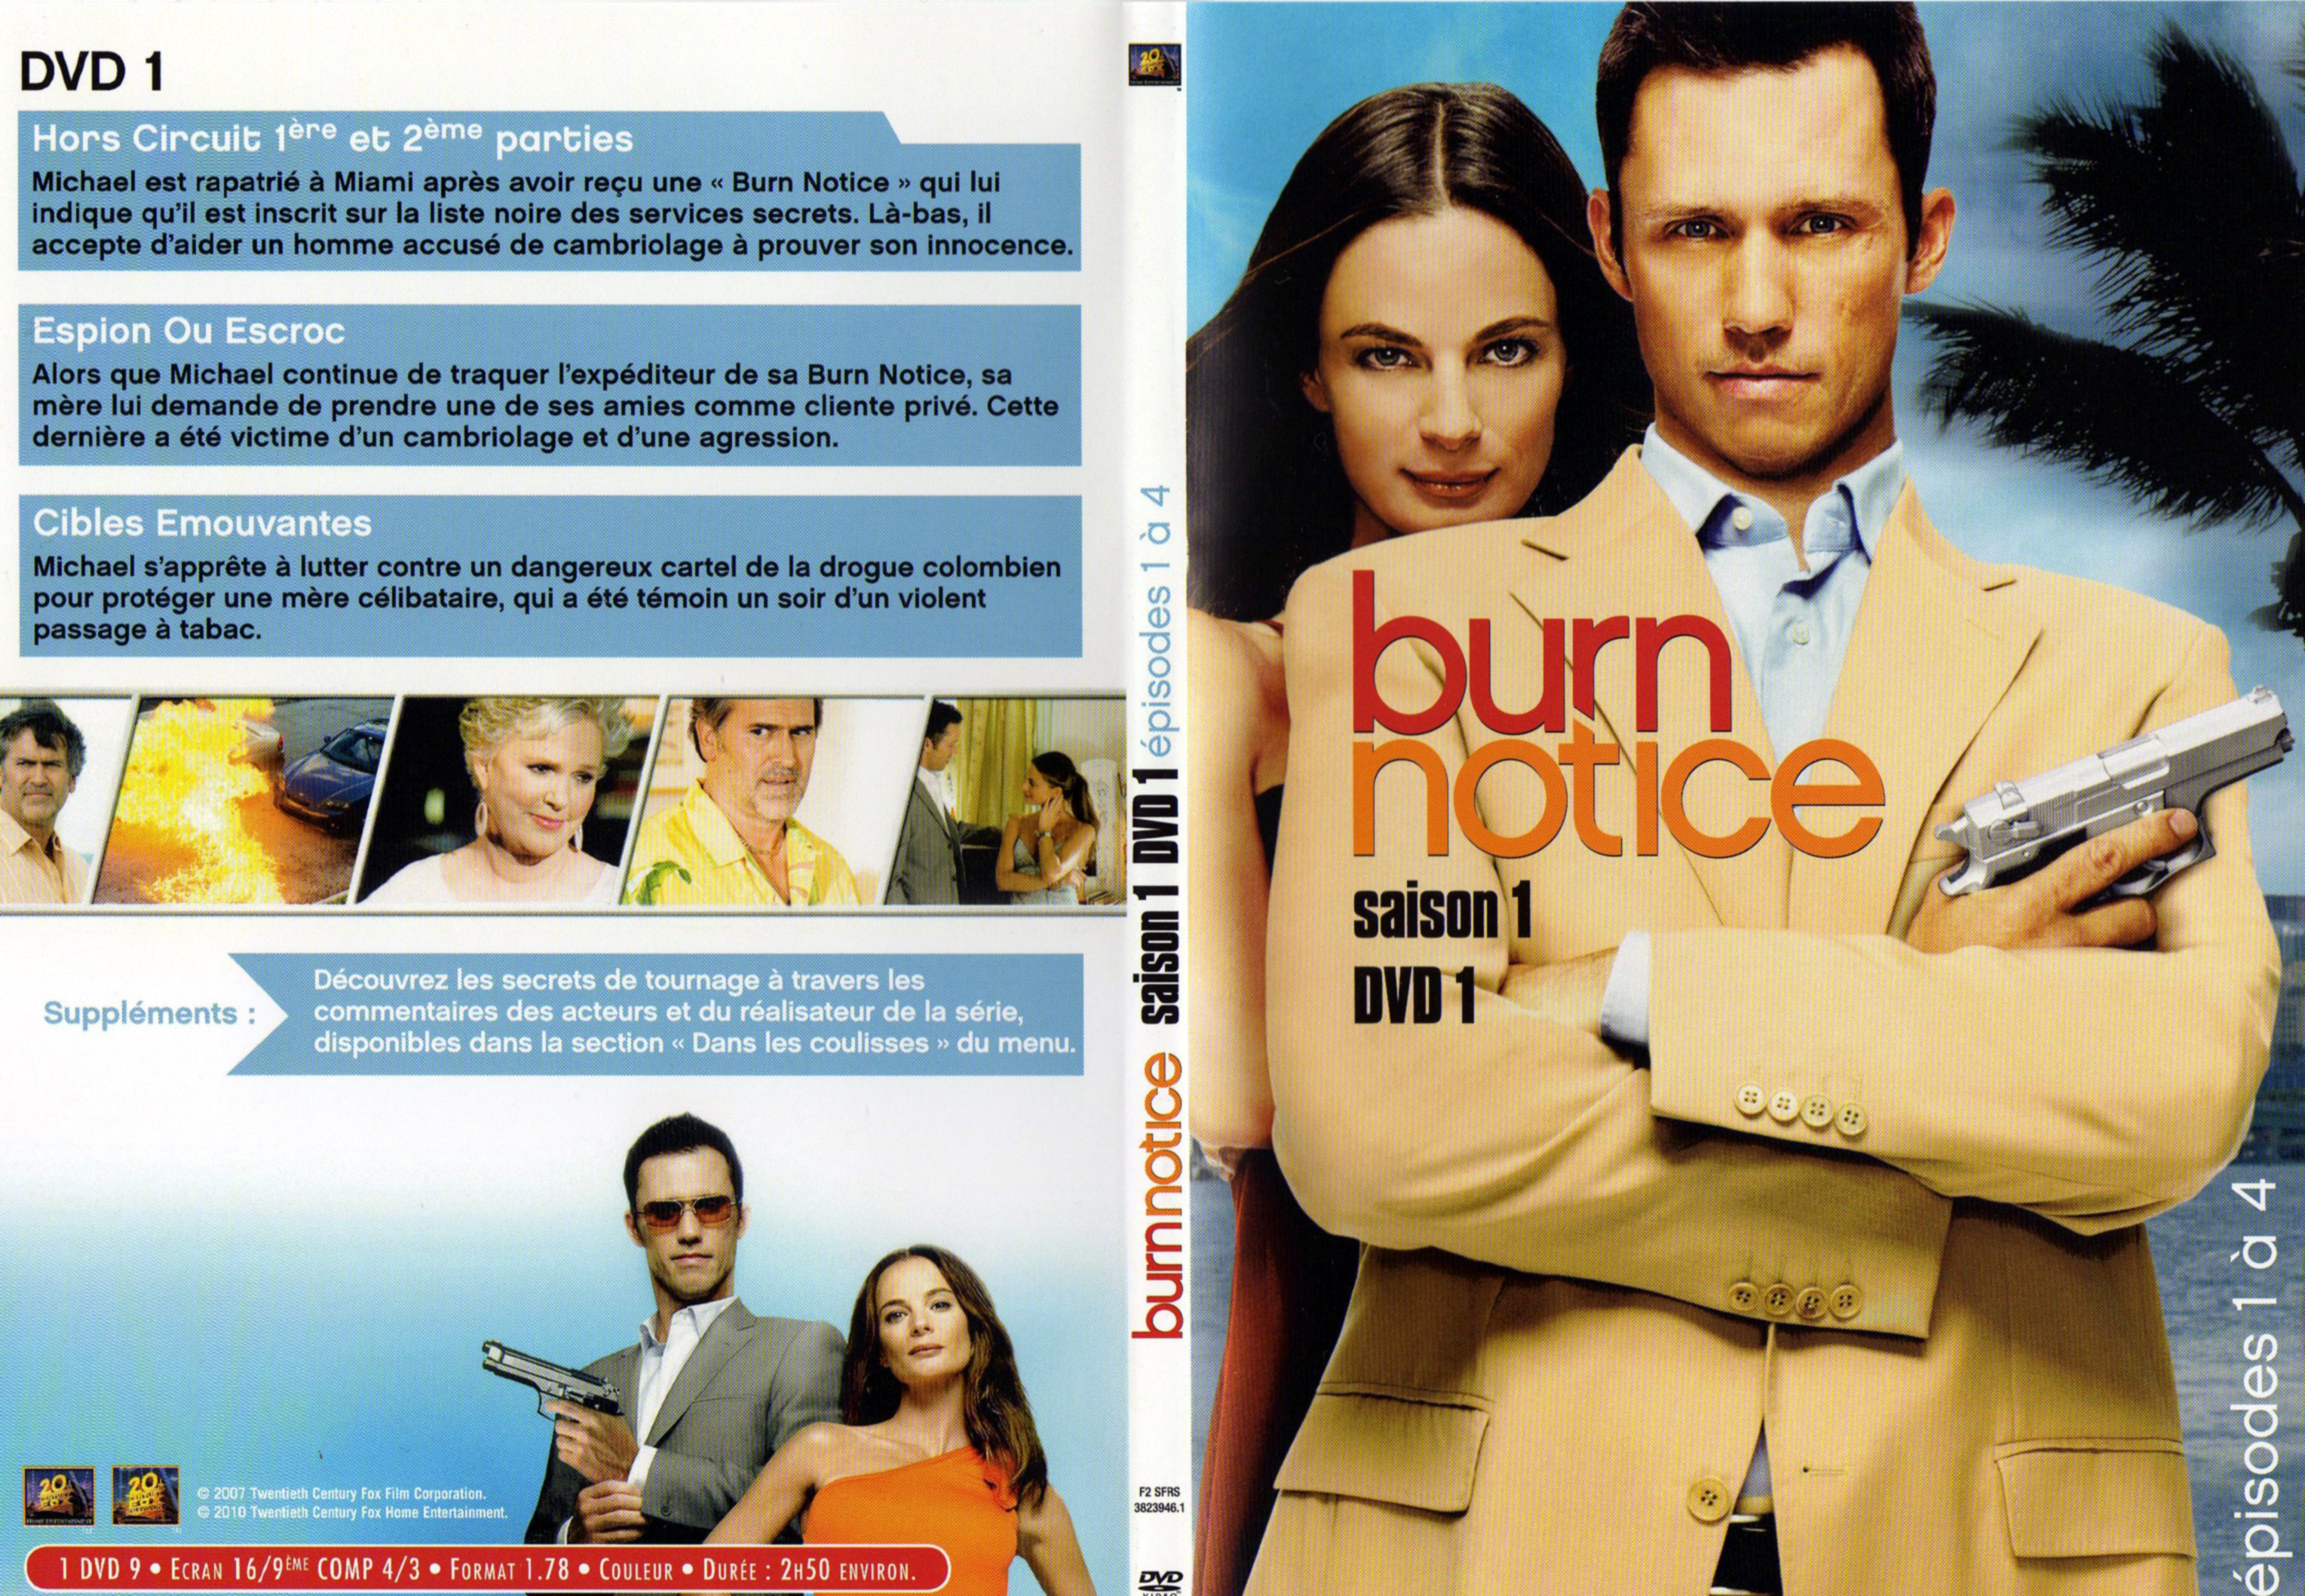 Jaquette DVD Burn notice saison 1 DVD 1